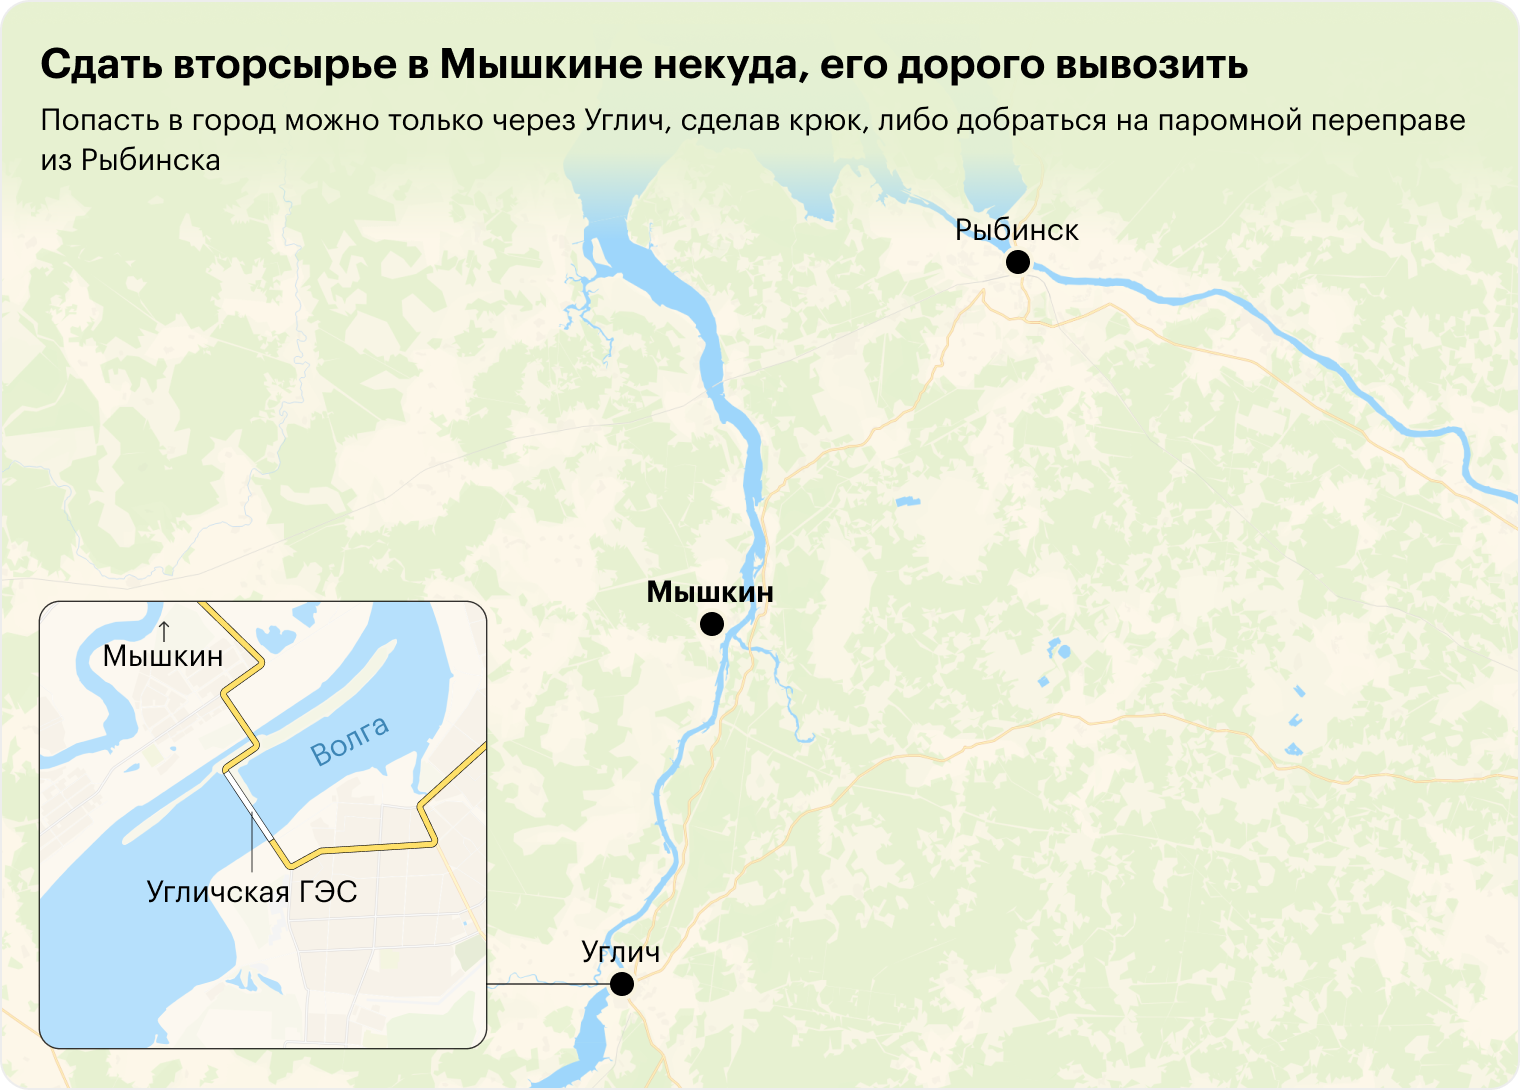 Мышкин на карте: на левый берег Волги можно проехать по плотине от Углича или на пароме из Рыбинска